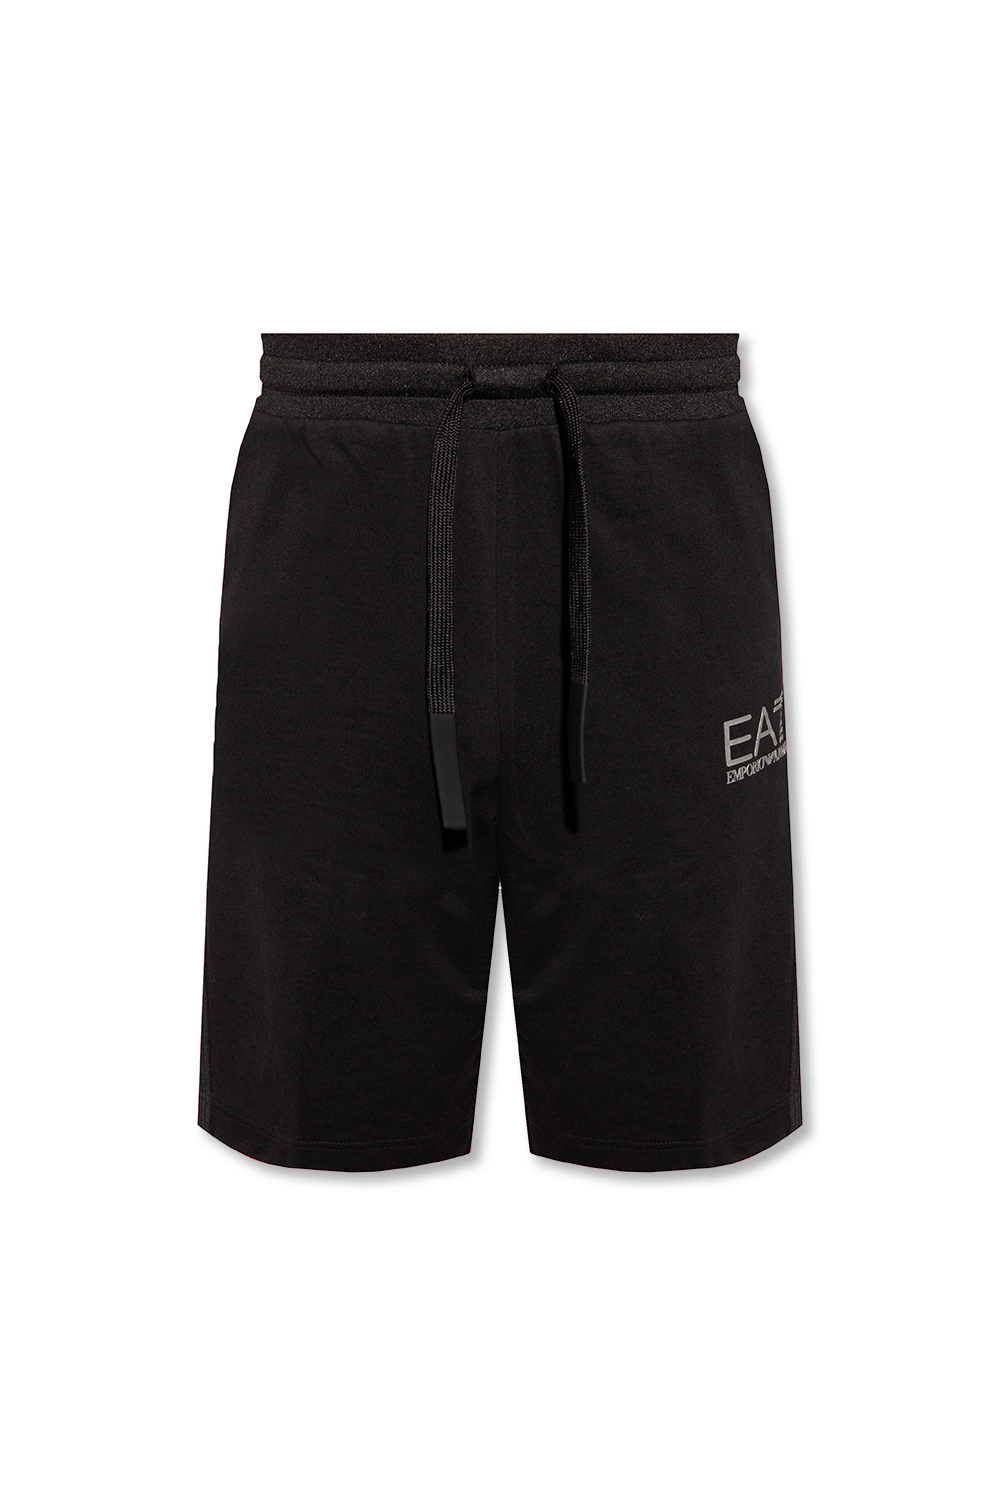 EA7 Emporio Armani Emporio Armani logo-waistband boxers set of 3